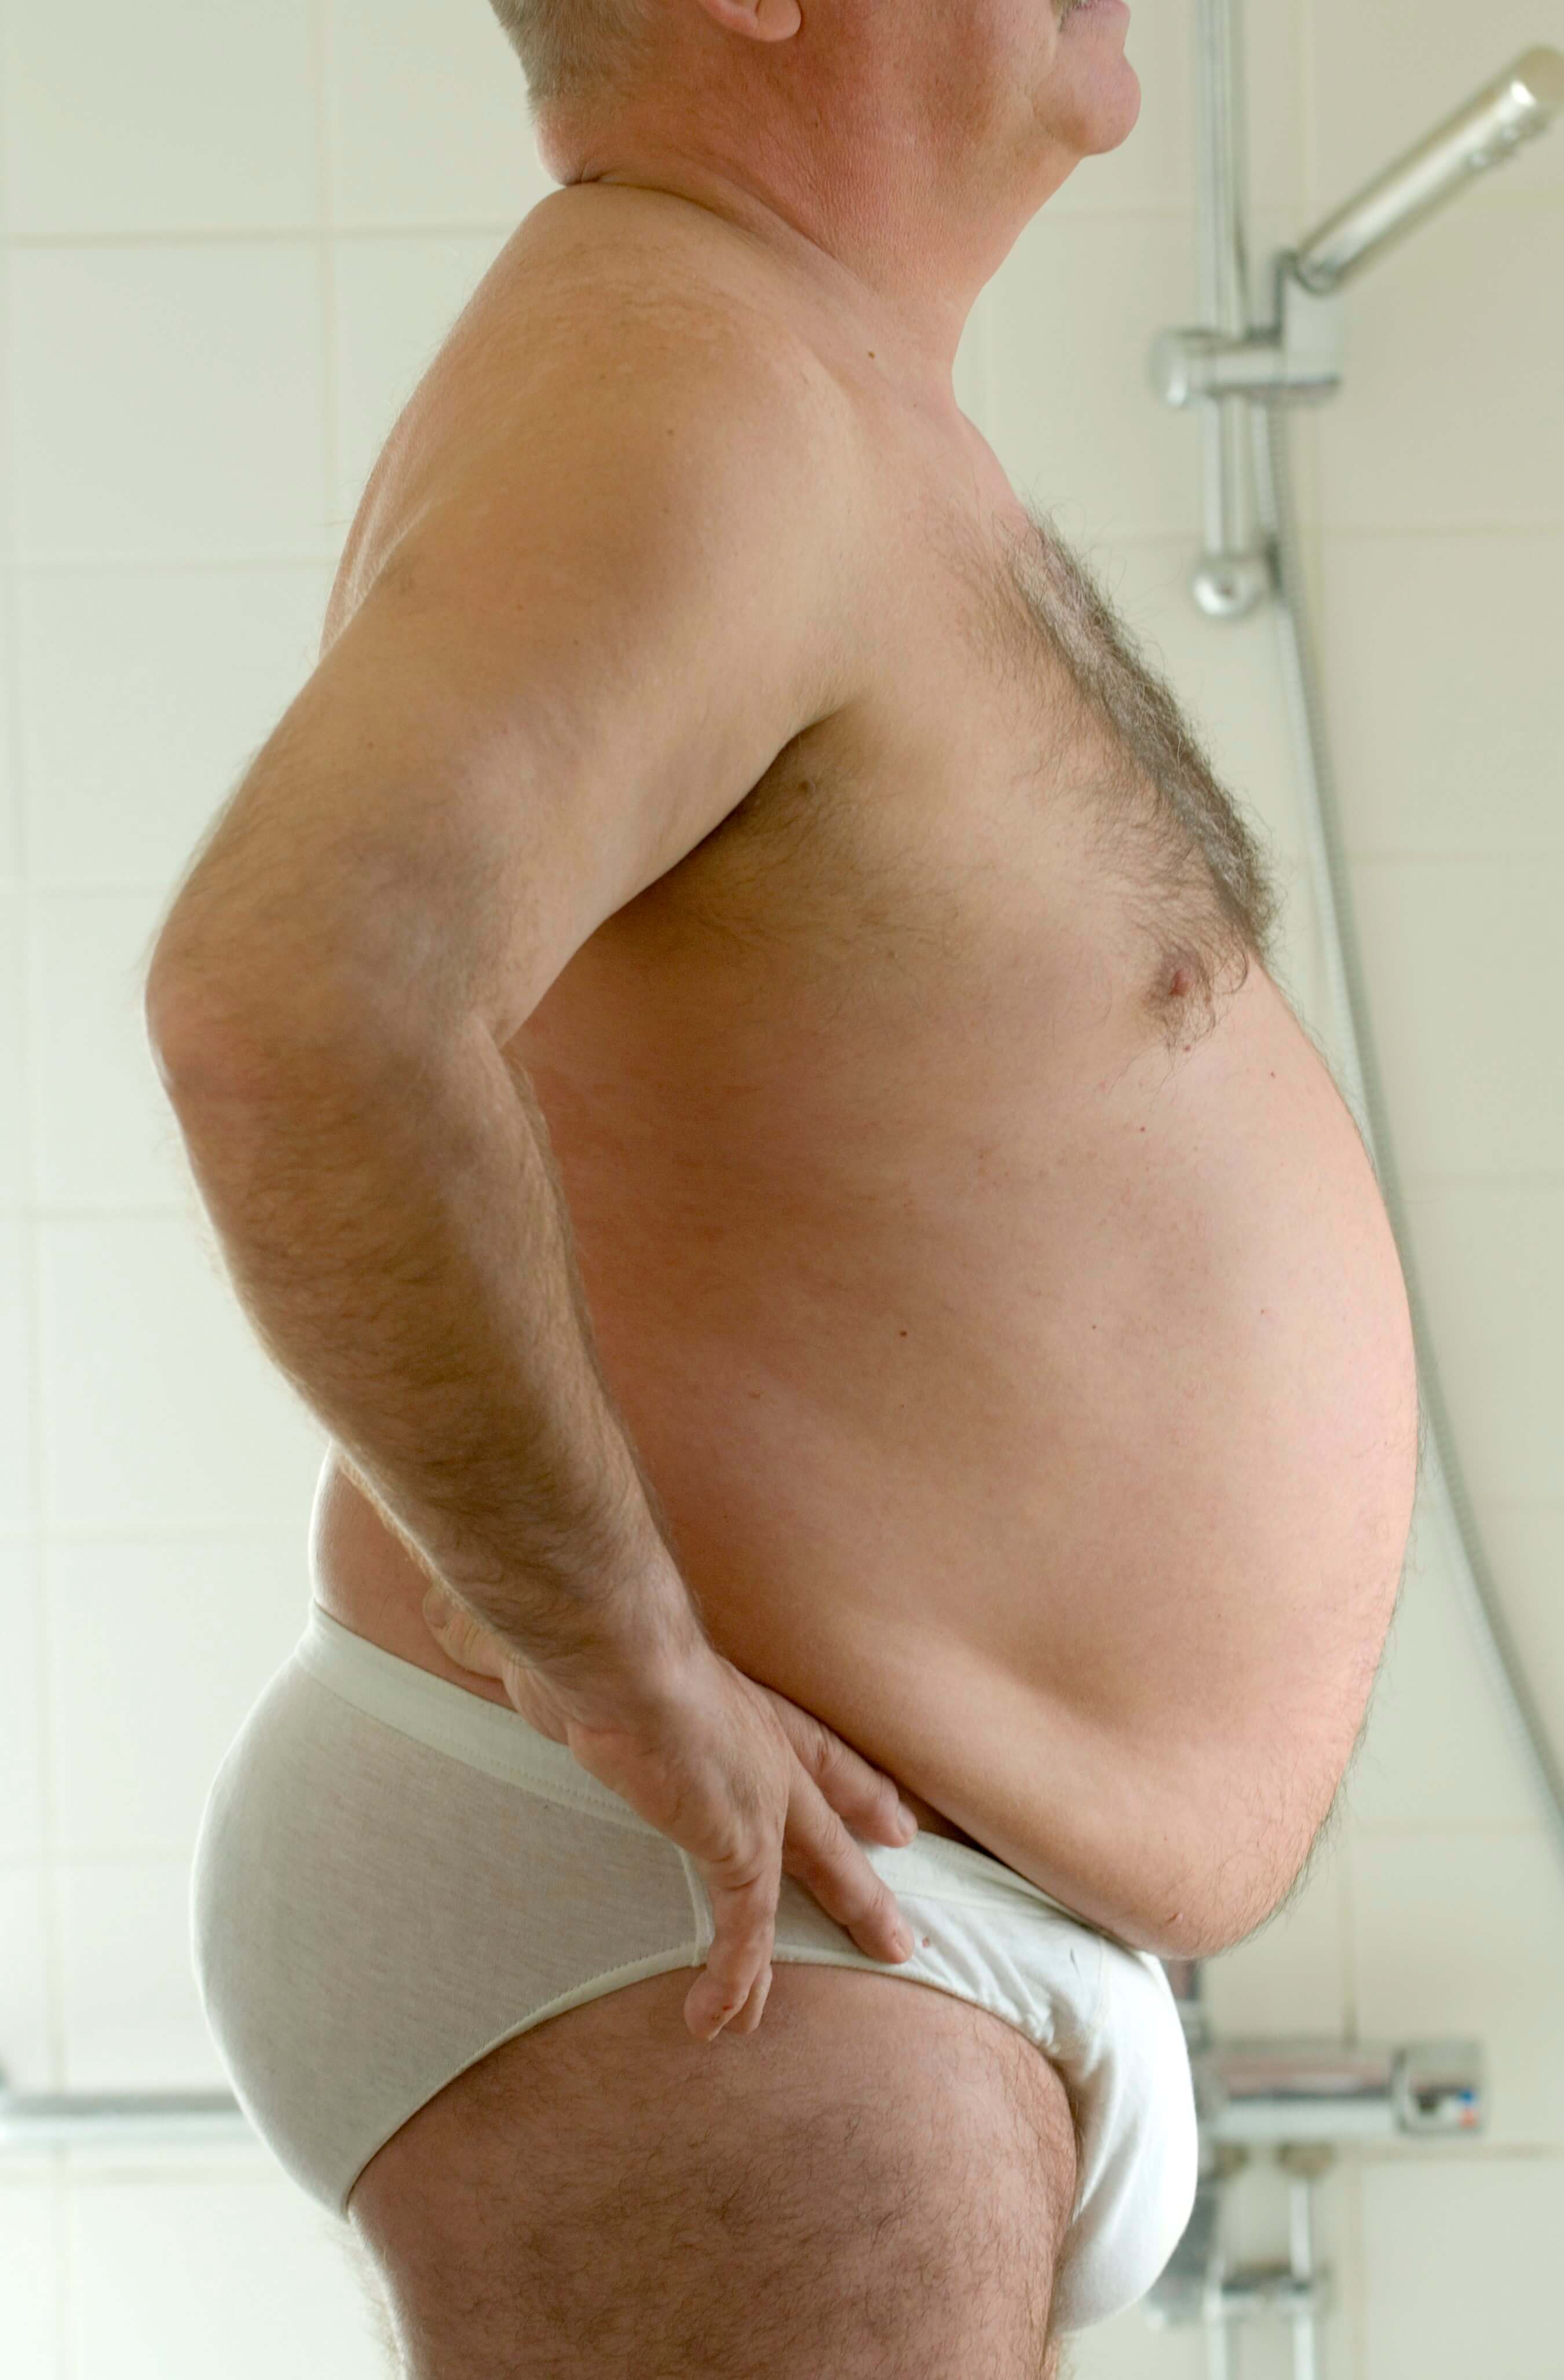 Att ha alltför mycket fetma är dock inte bra, precis som det inte är bra att vara alltför underviktig. 